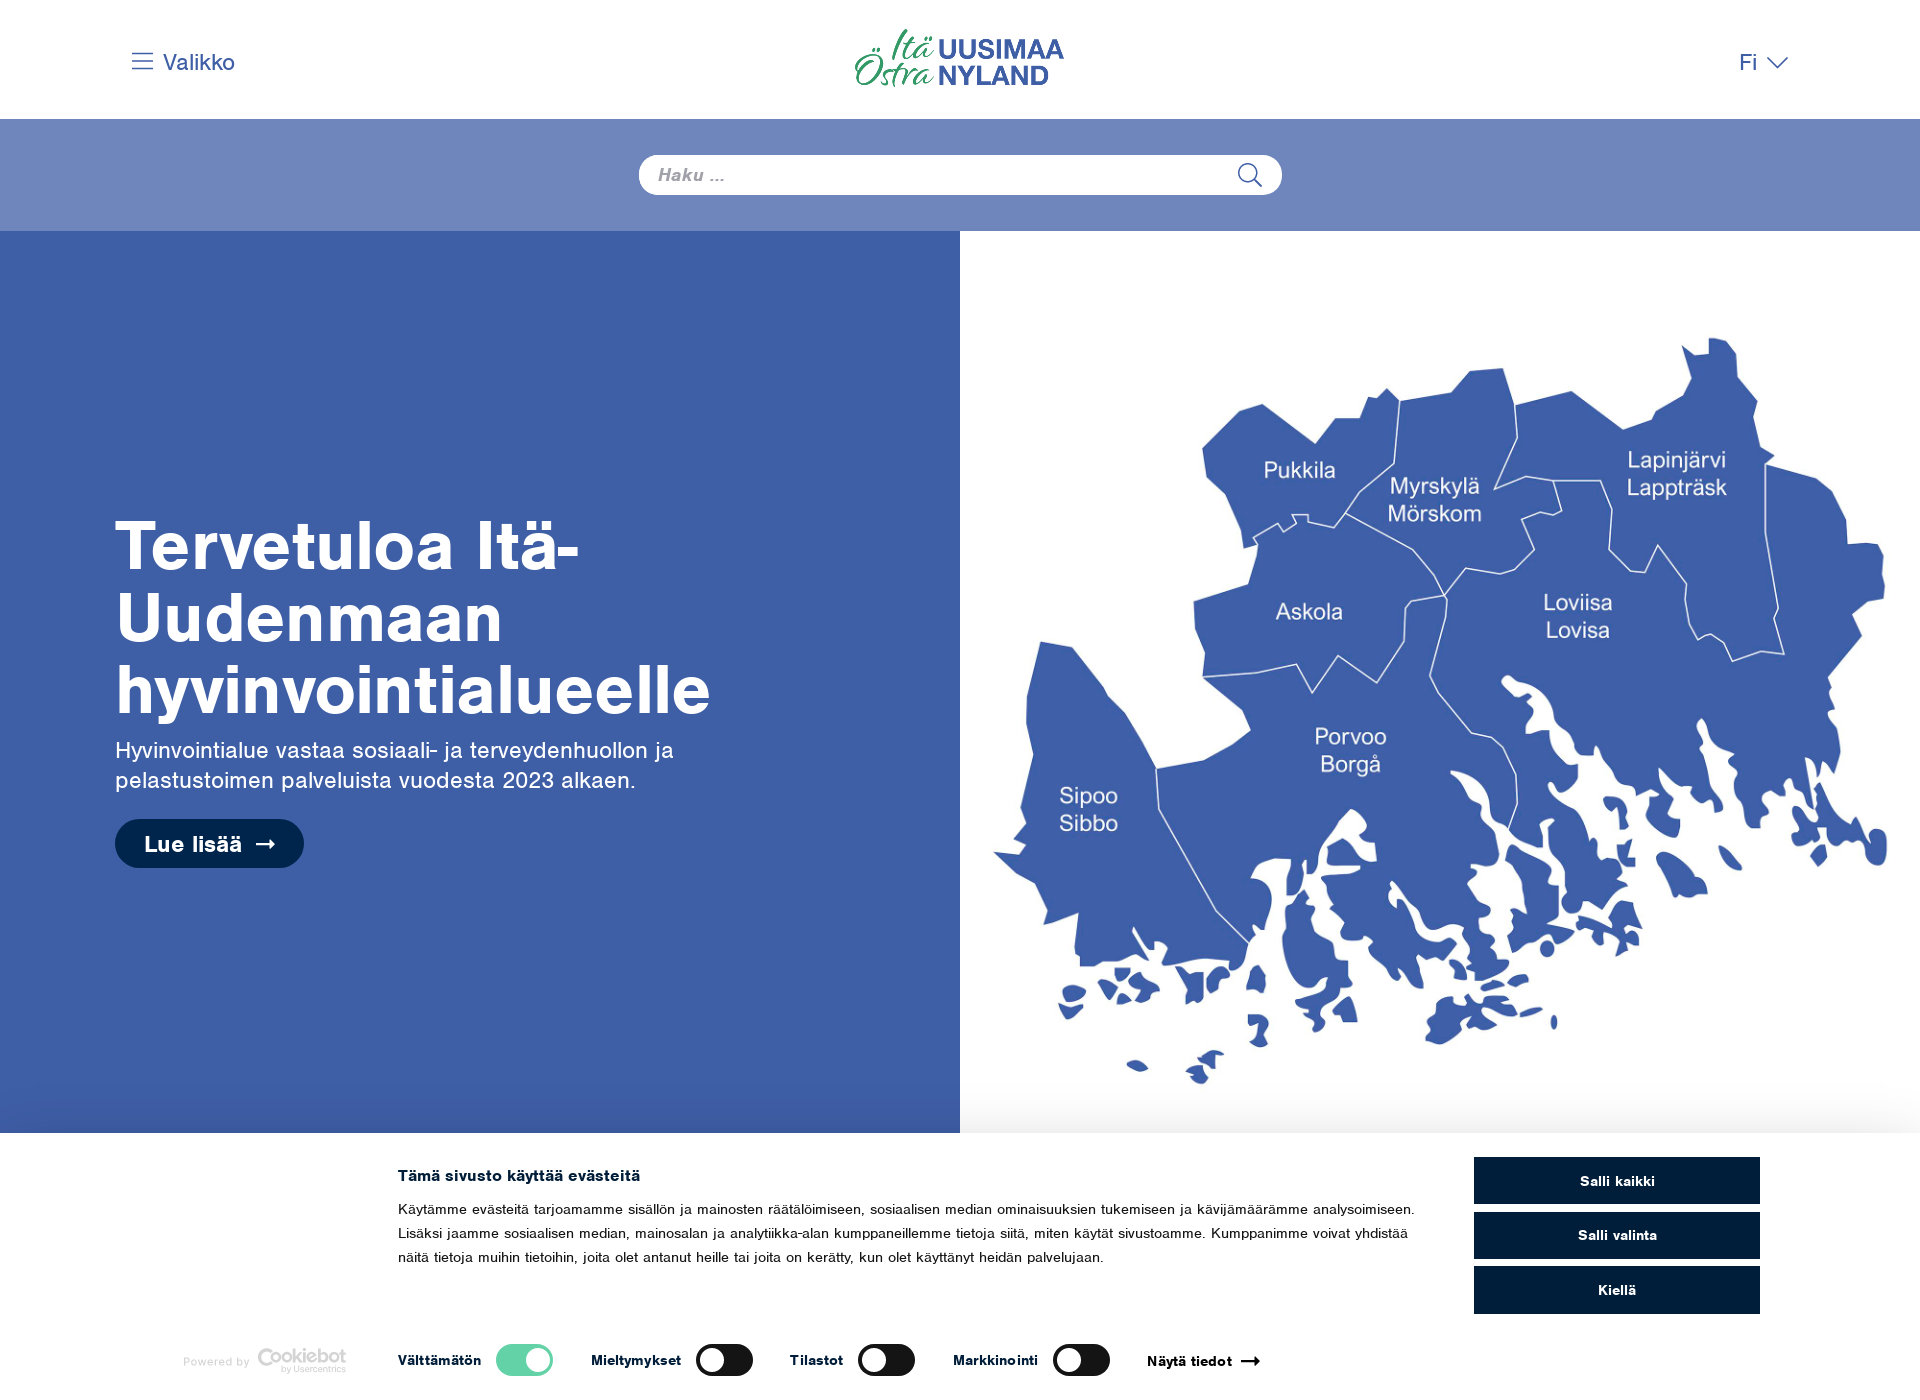 Näyttökuva ostranyland.fi